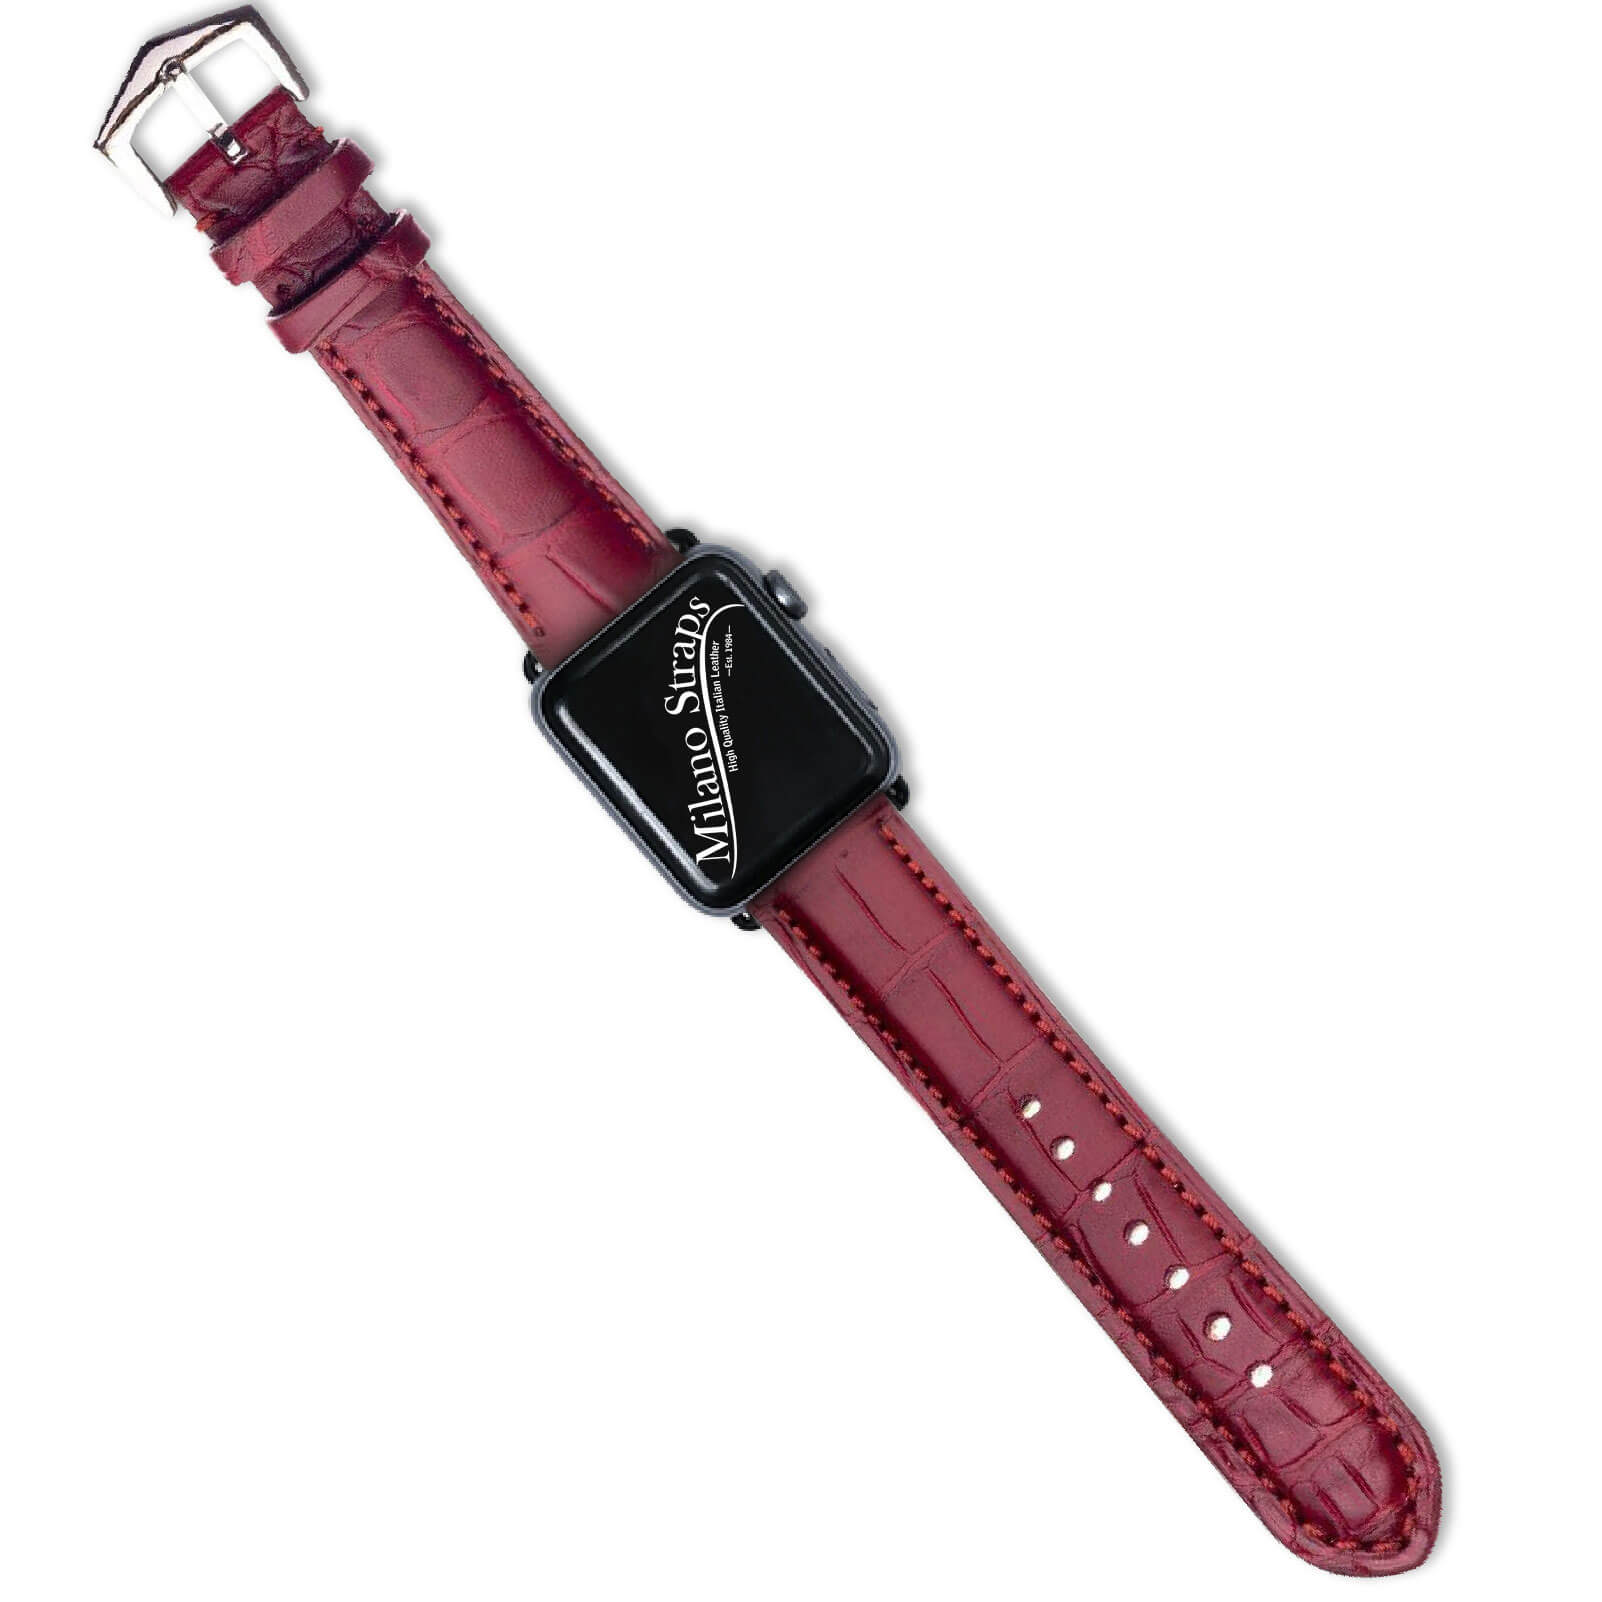 Apple Watch Leather Band ™ Burgundy Matt Alligator Watch Strap - Milano Straps